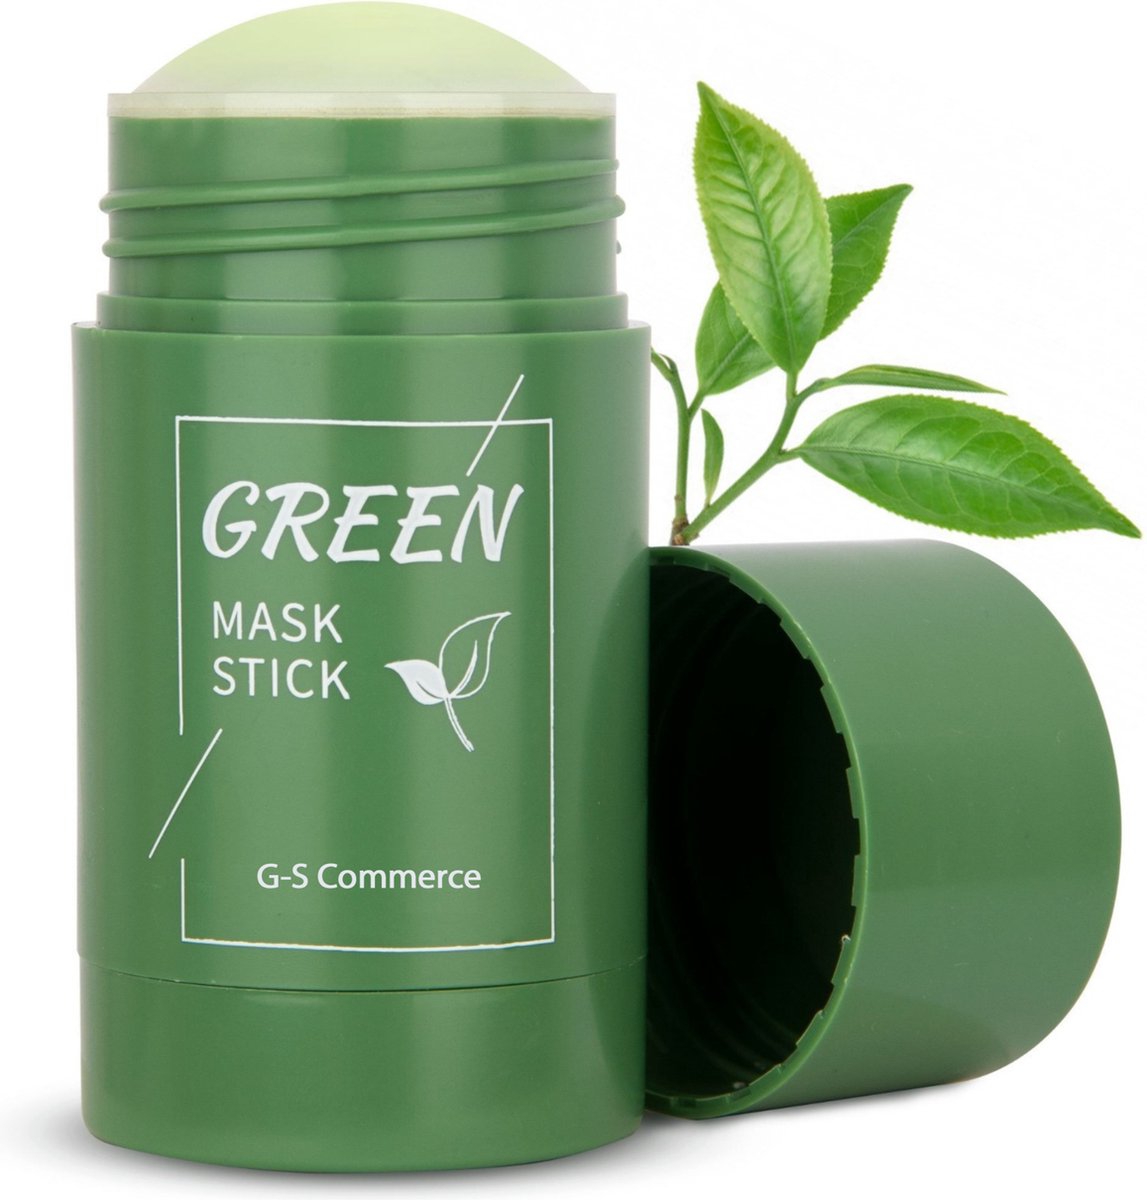 Green mask stick | Gezichtsmasker | Mee eters verwijderen | Blackhead remover | De originele green mask stick | Groene thee | Huidverzorging | - G-S Commerce